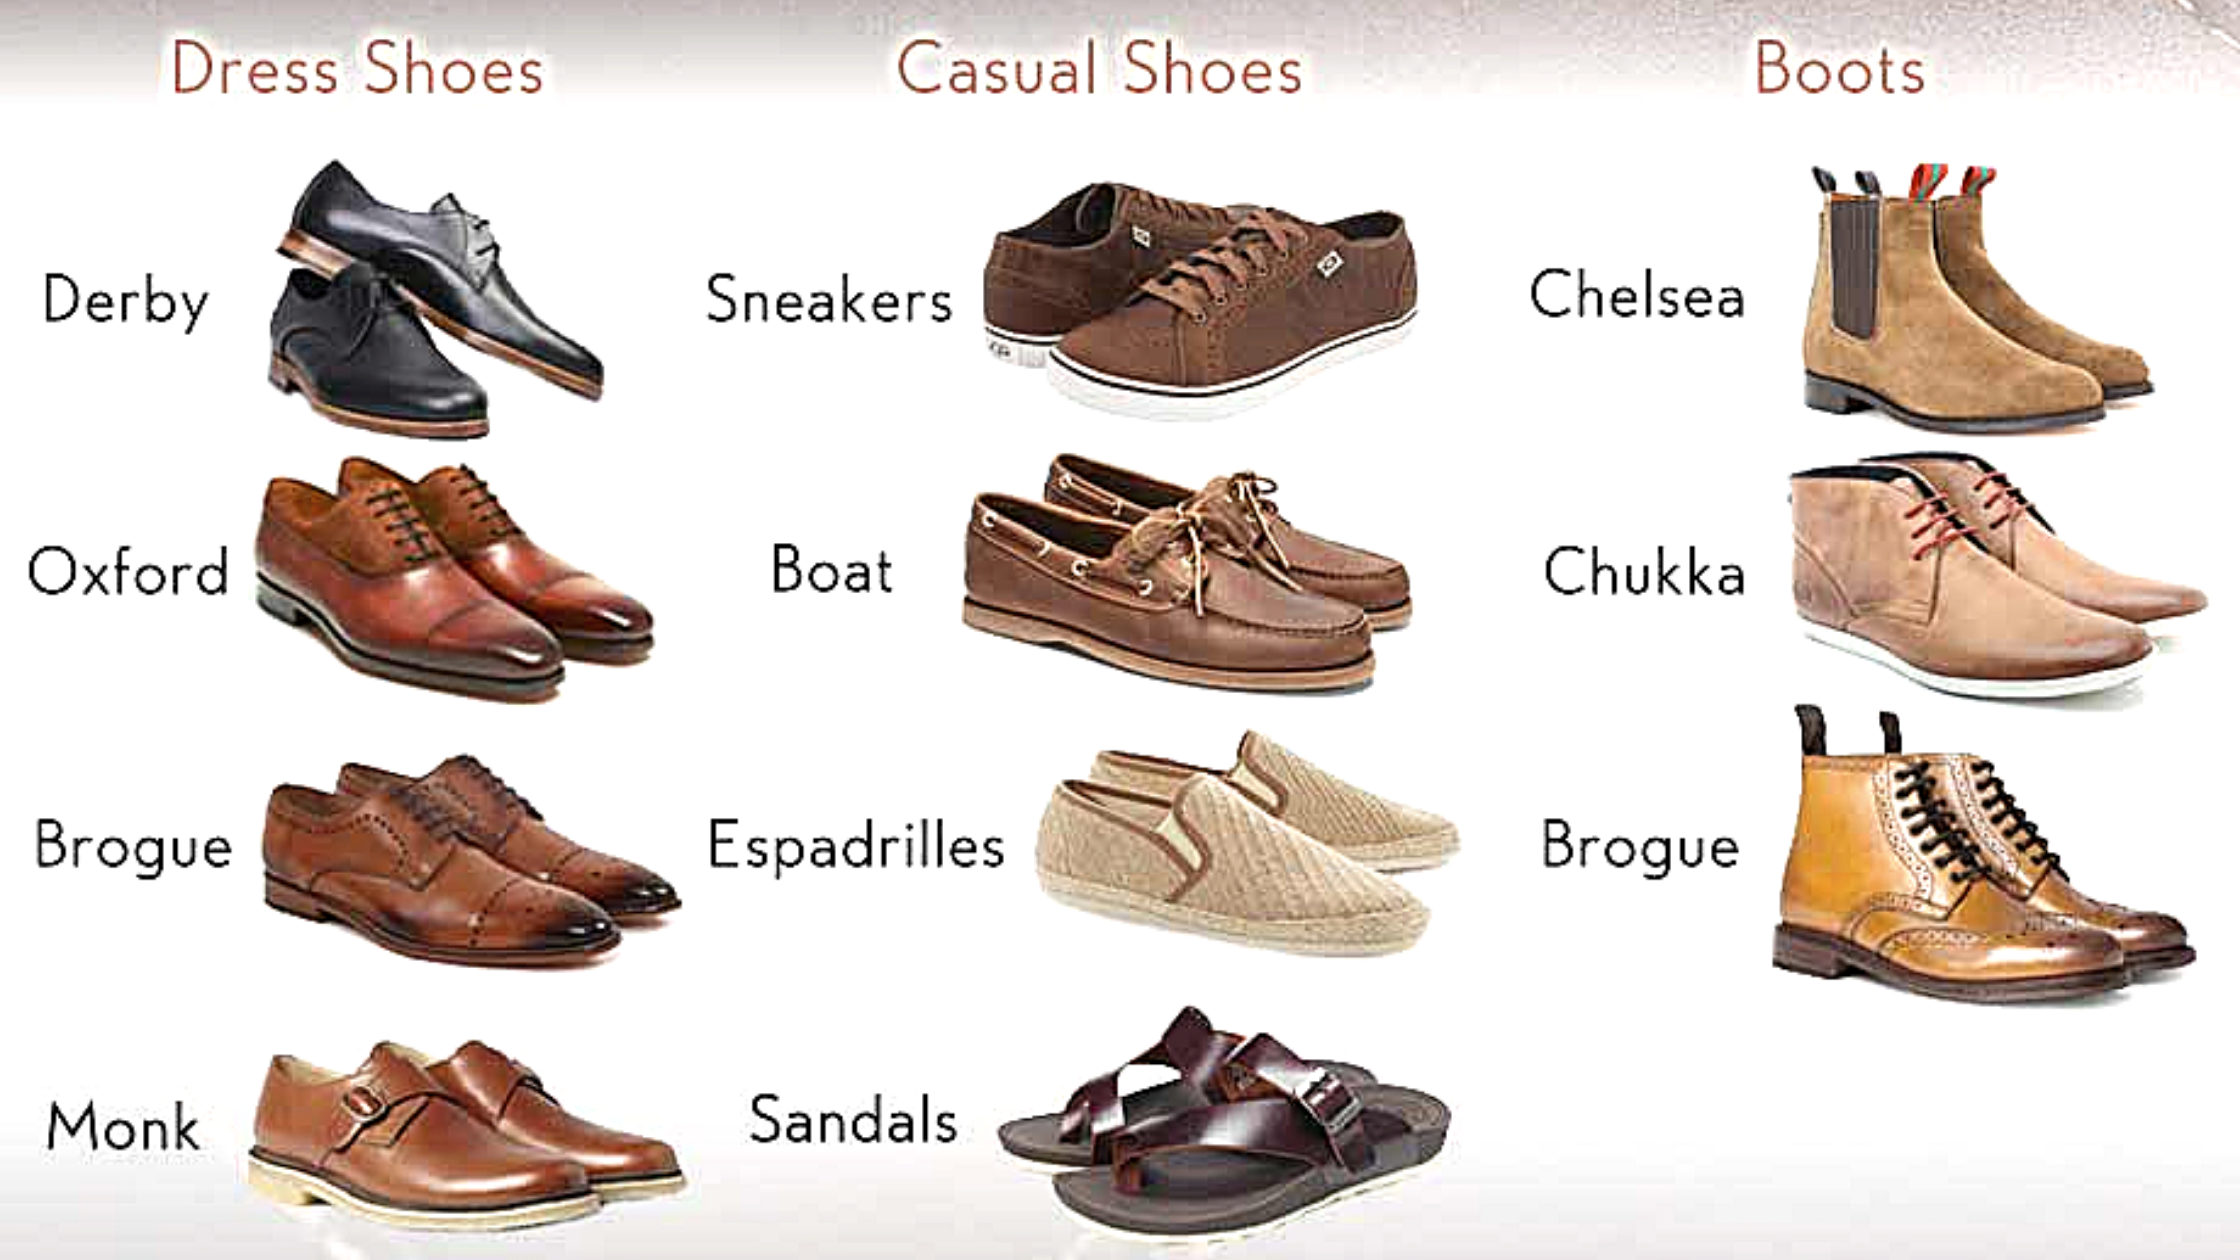 Название мужской обуви. Мужская обувь названия моделей. Название мужских туфель. Классификация мужских ботинок. Туфли на английском языке